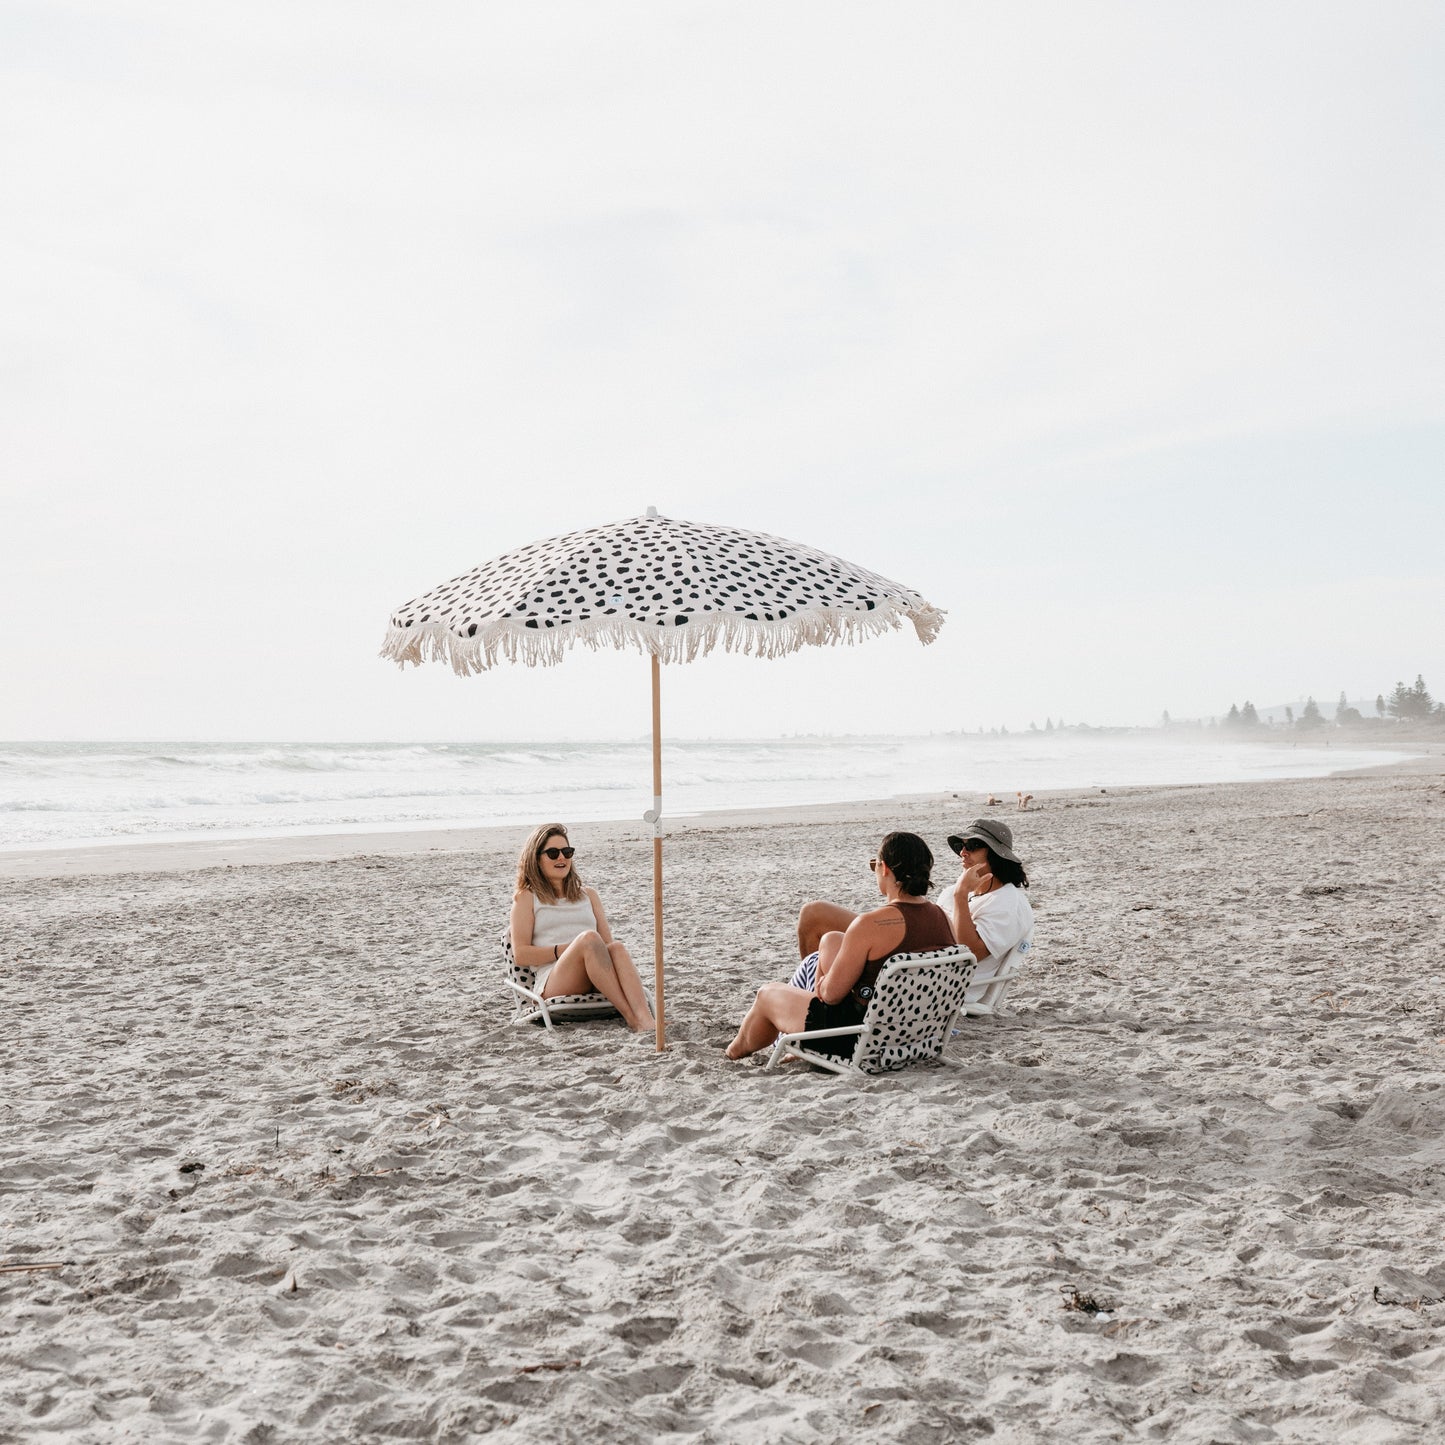 Beach Chair - Spot